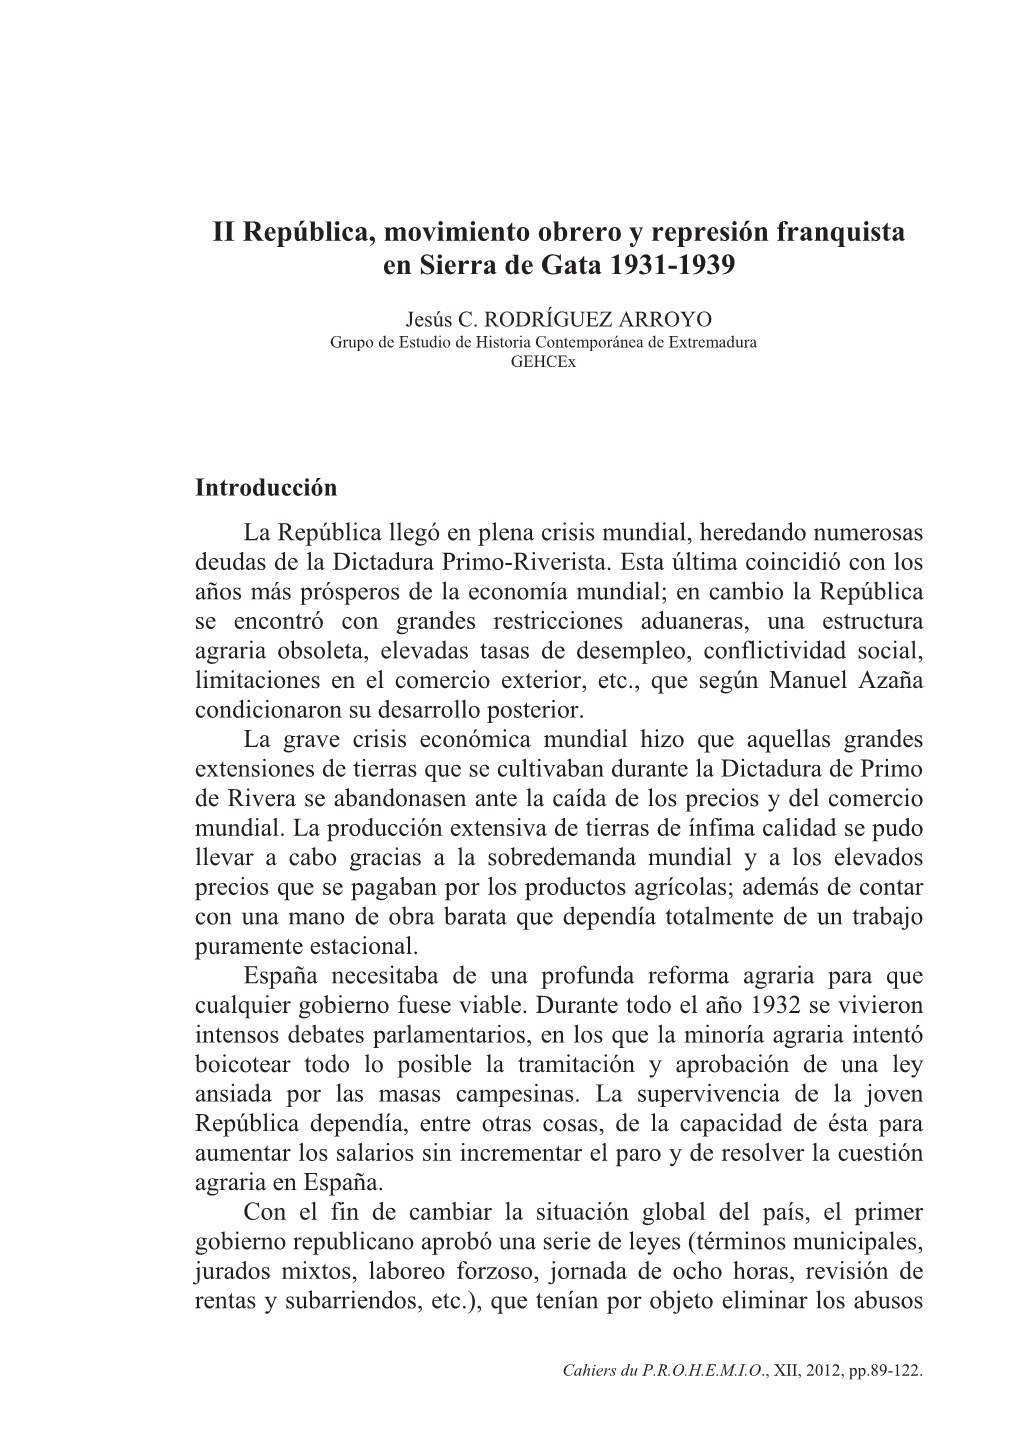 II República, Movimiento Obrero Y Represión Franquista En Sierra De Gata 1931-1939